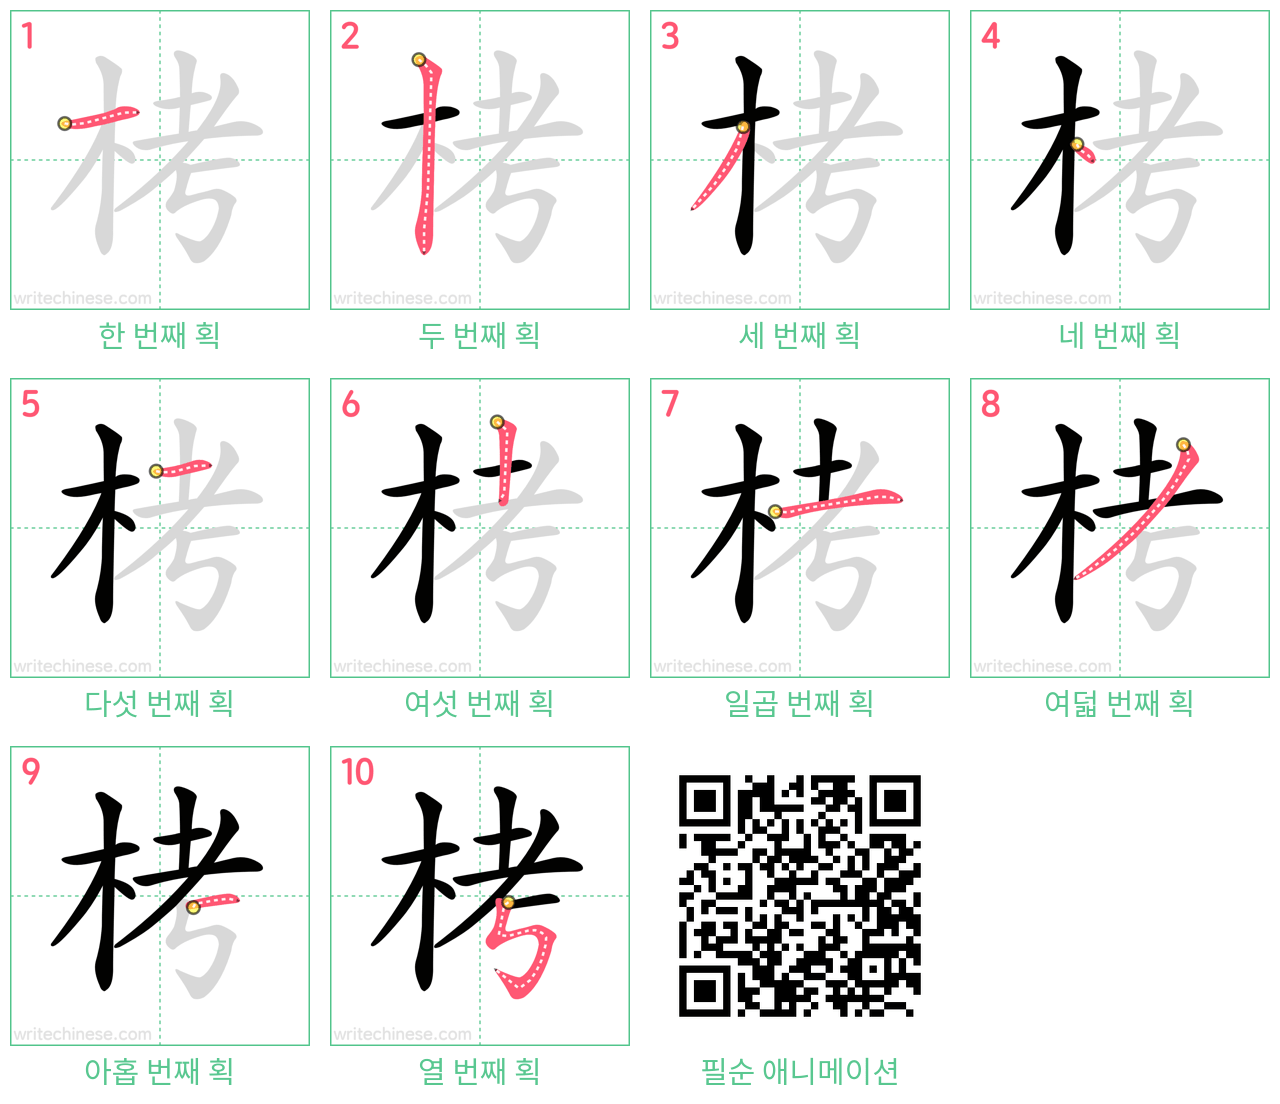 栲 step-by-step stroke order diagrams